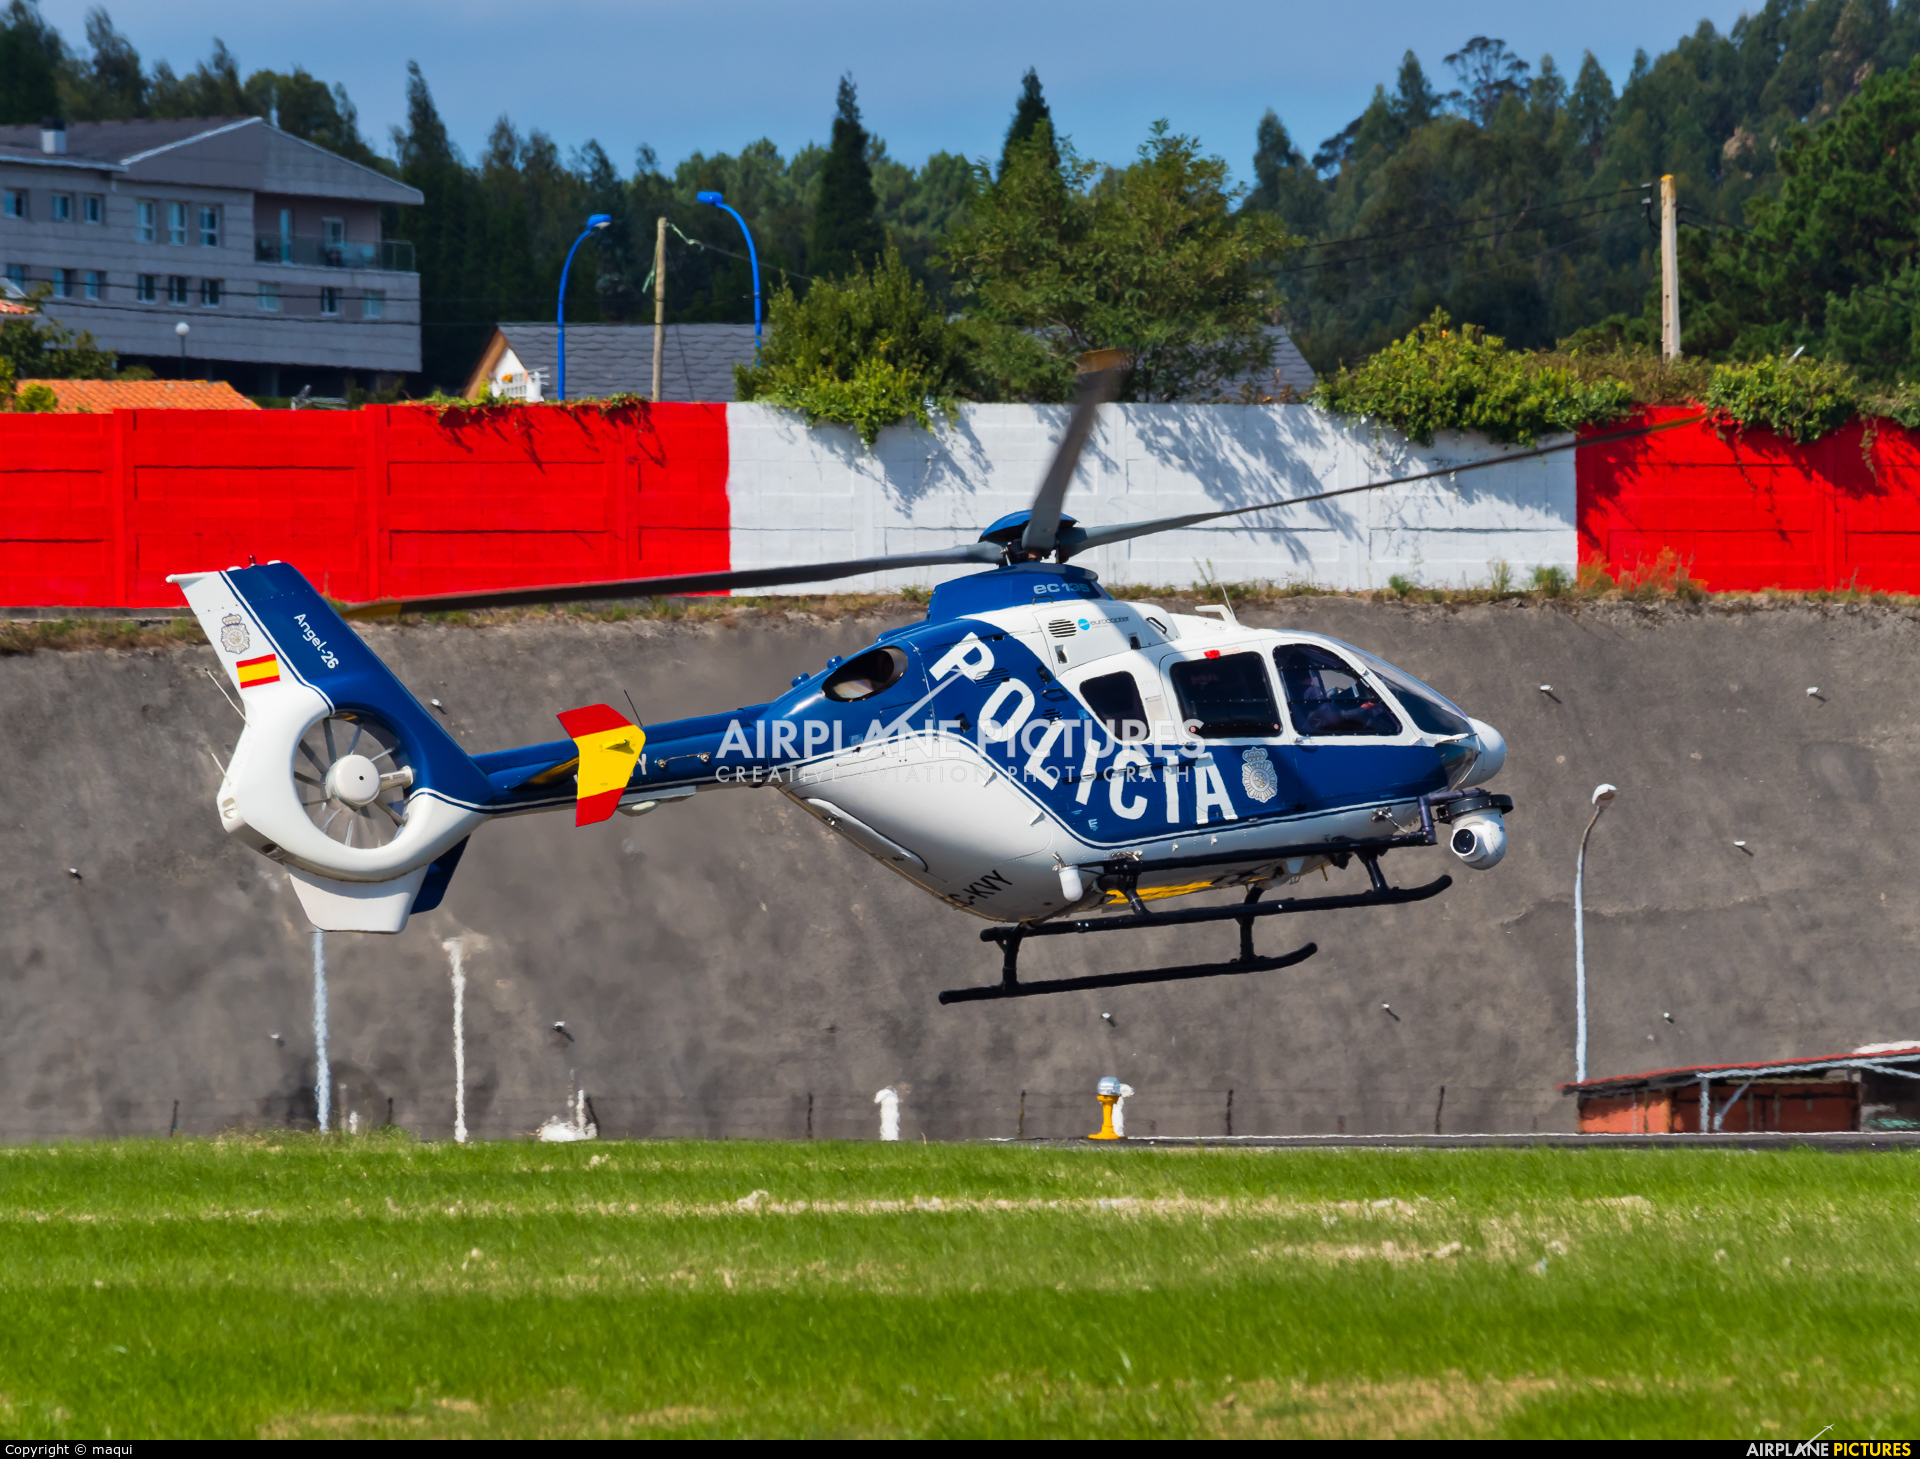 Spain - Police EC-KVY aircraft at La Coruña